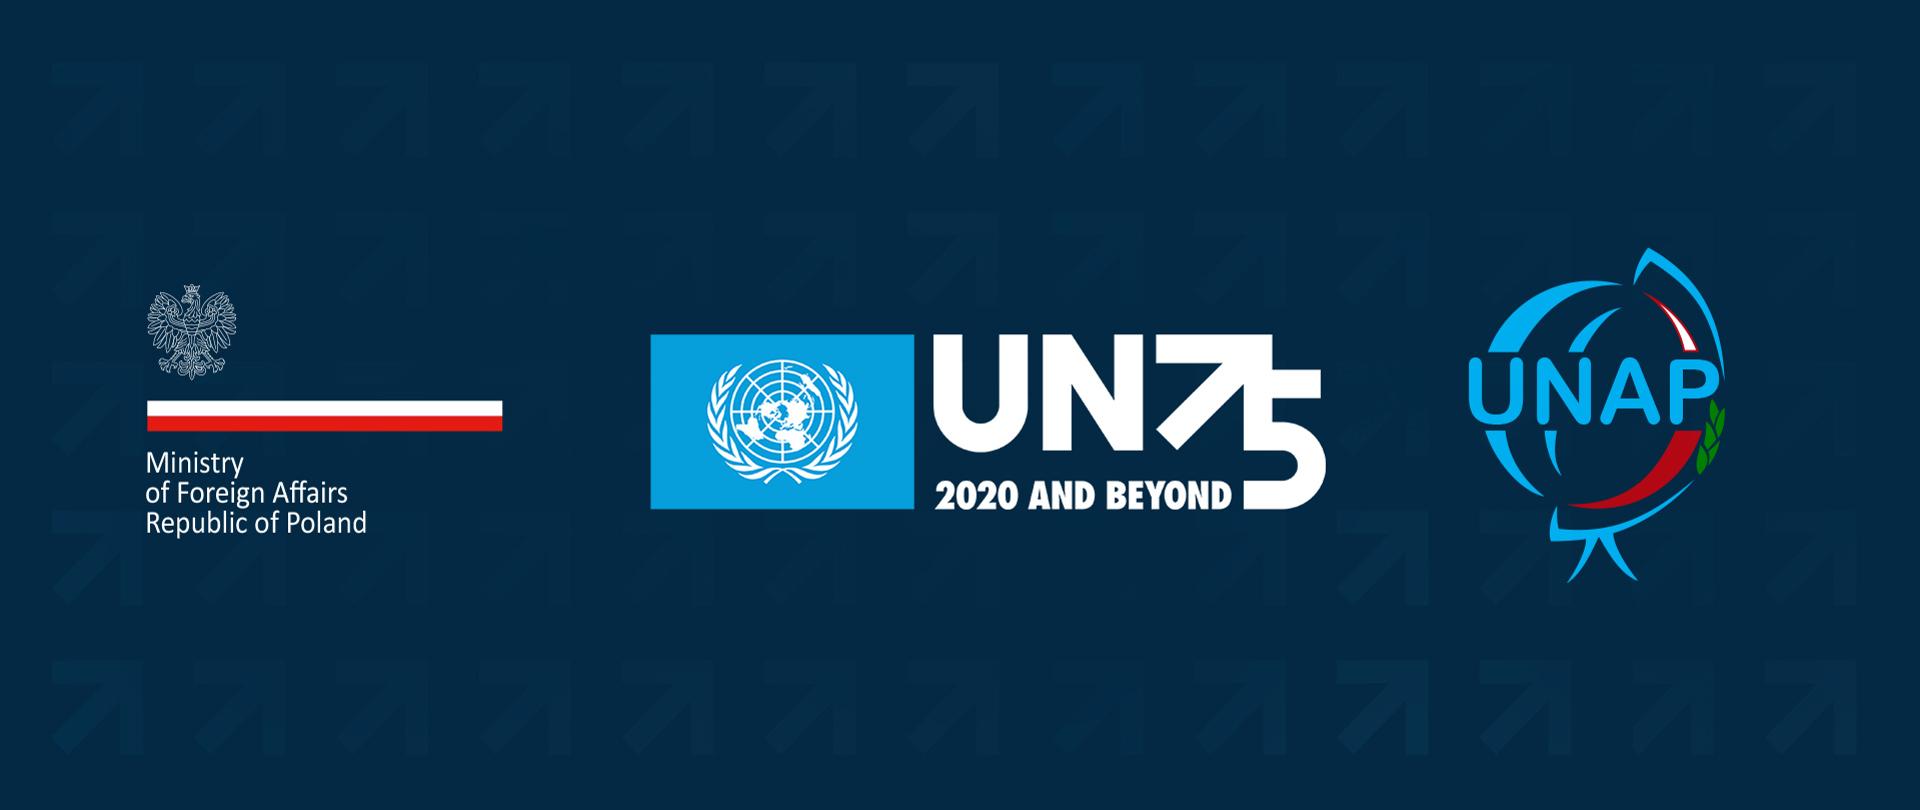 UN logo - 75. anniversary